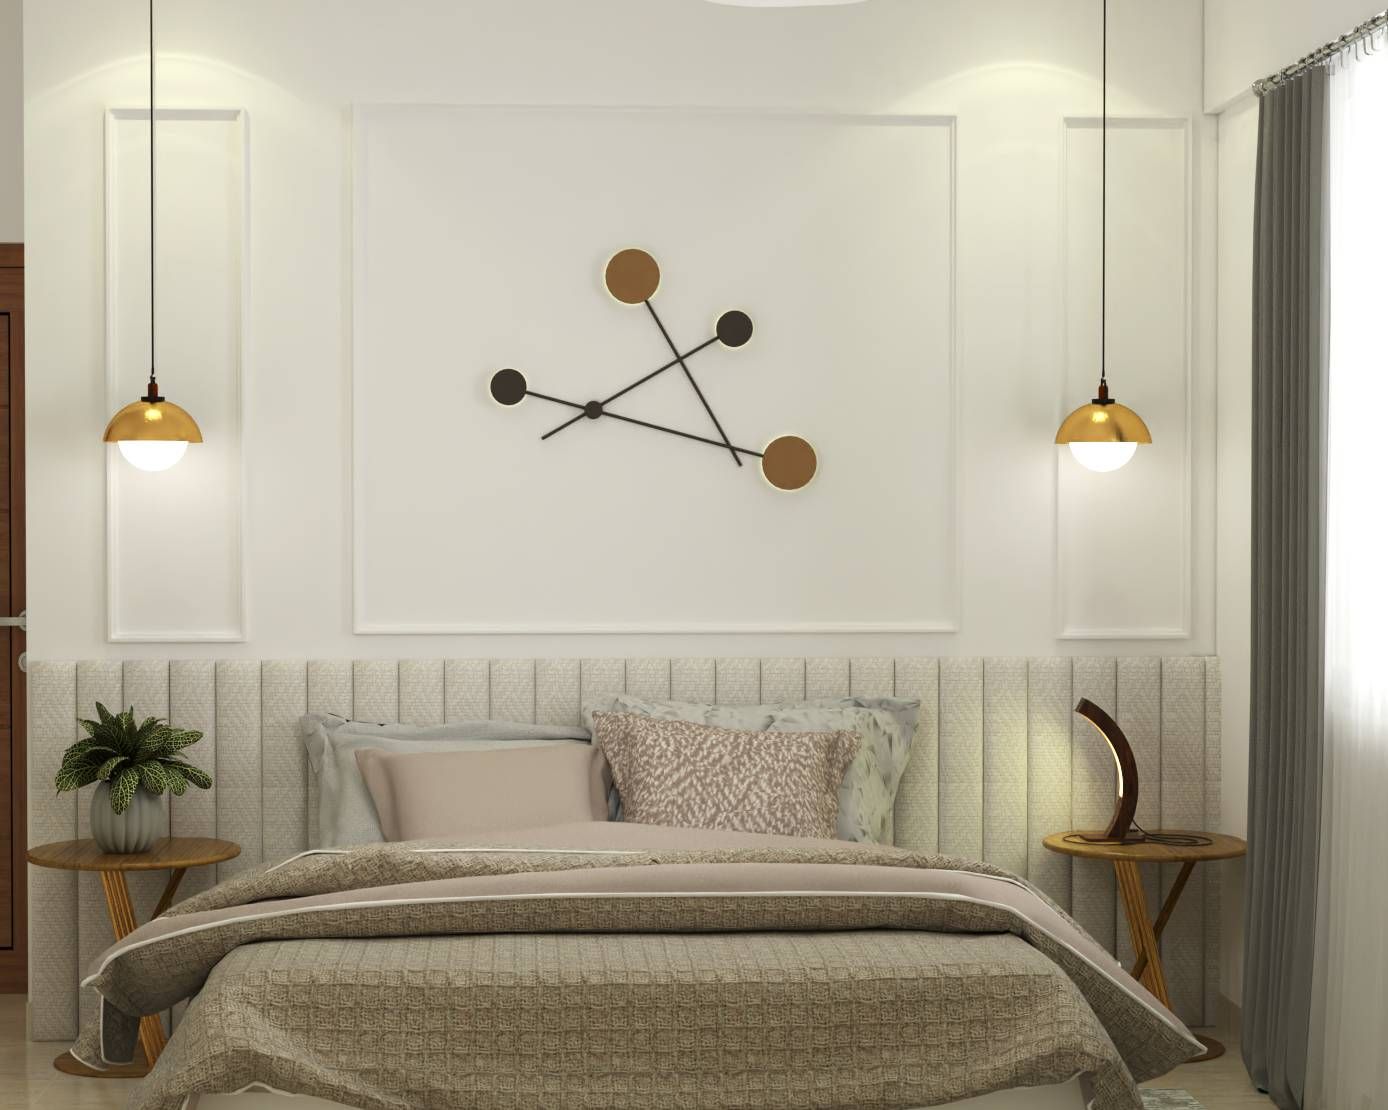 Modern Master Bedroom Design With Hanging Lights